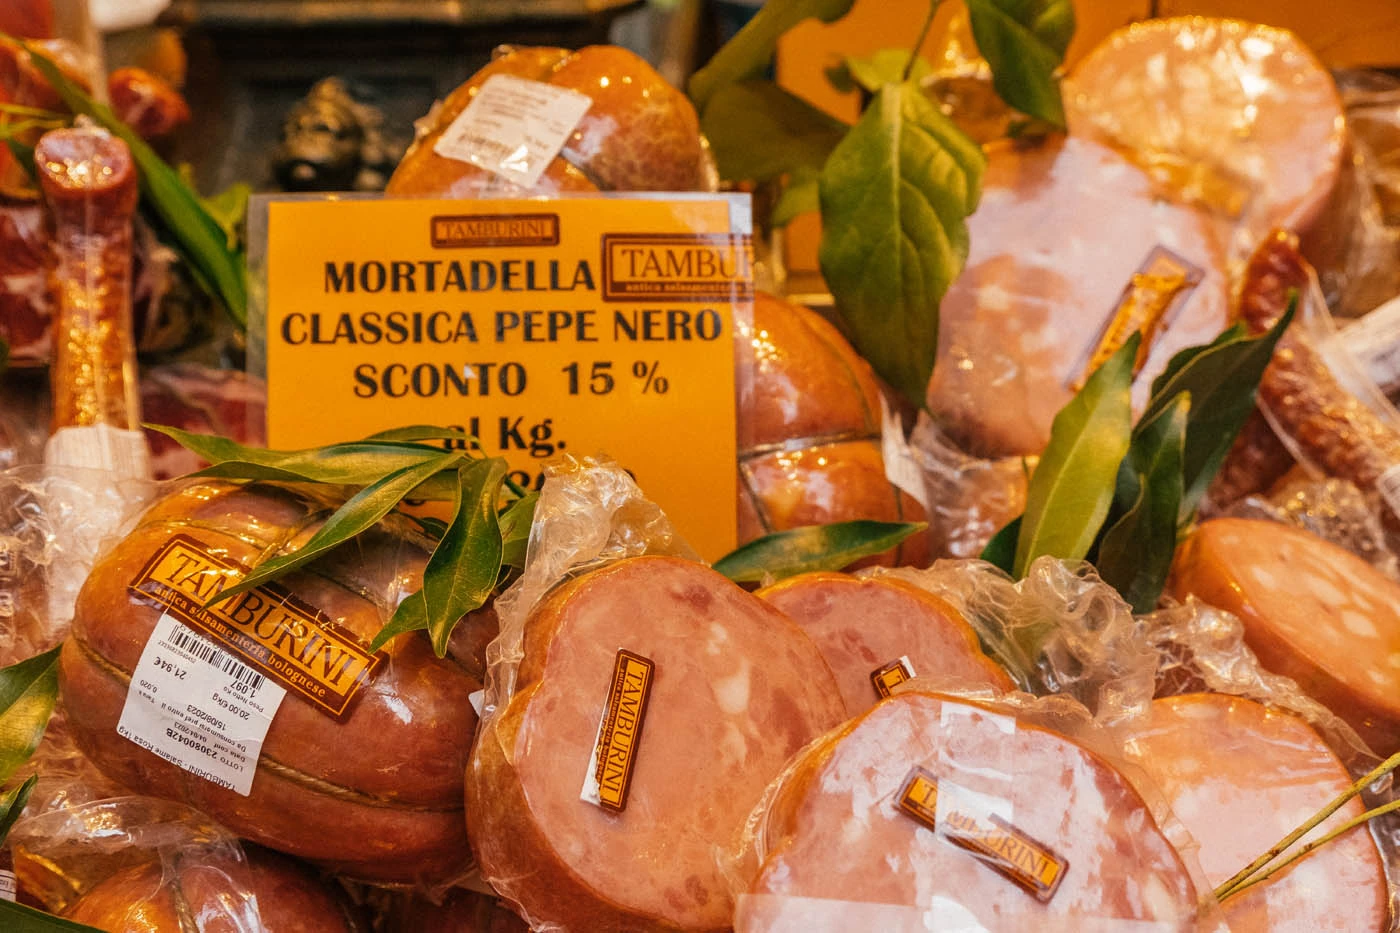 What to Eat in Bologna - Mortadella classica pepe nero